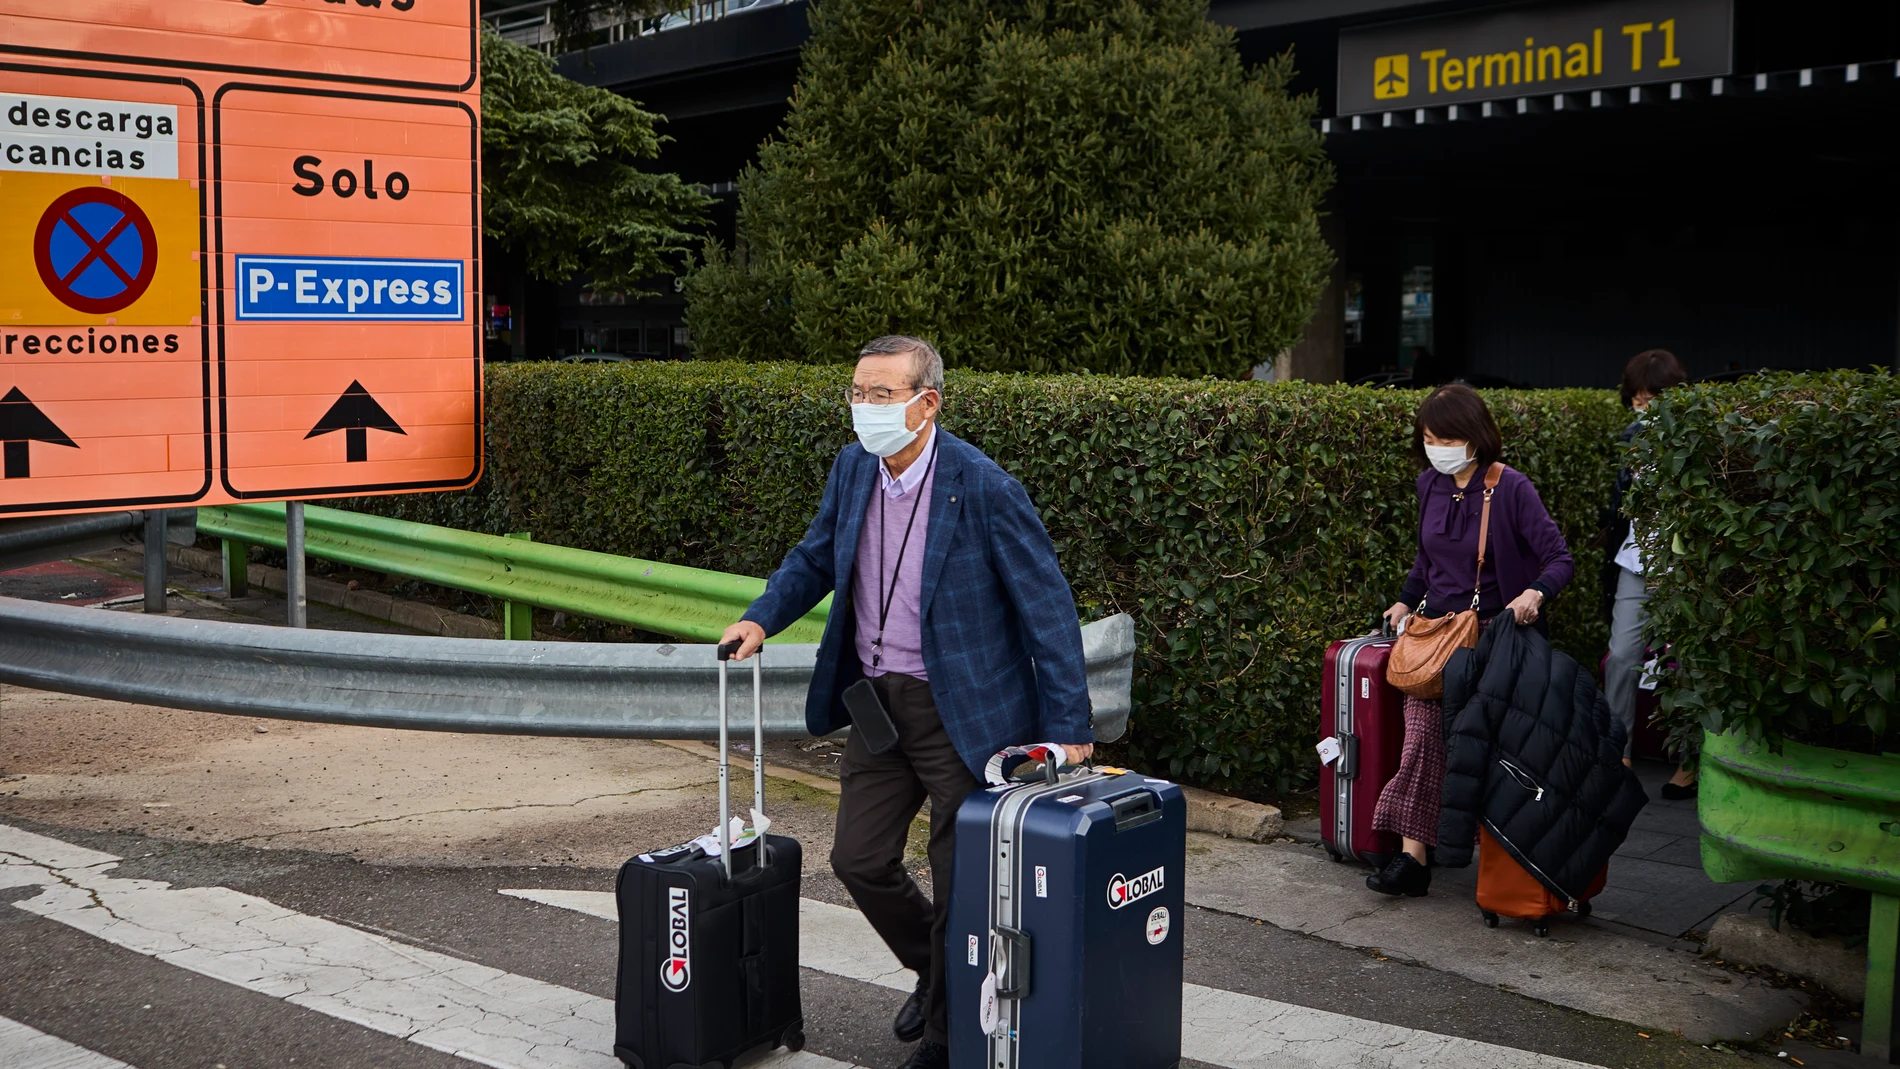 Ciudadanos chinos saliendo de la terminal 4 del Aeropuerto Madrid Barajas ayer, el día que el Gobierno anunció que pedirá a los pasajeros procedentes de China un test negativo de covid para entrar